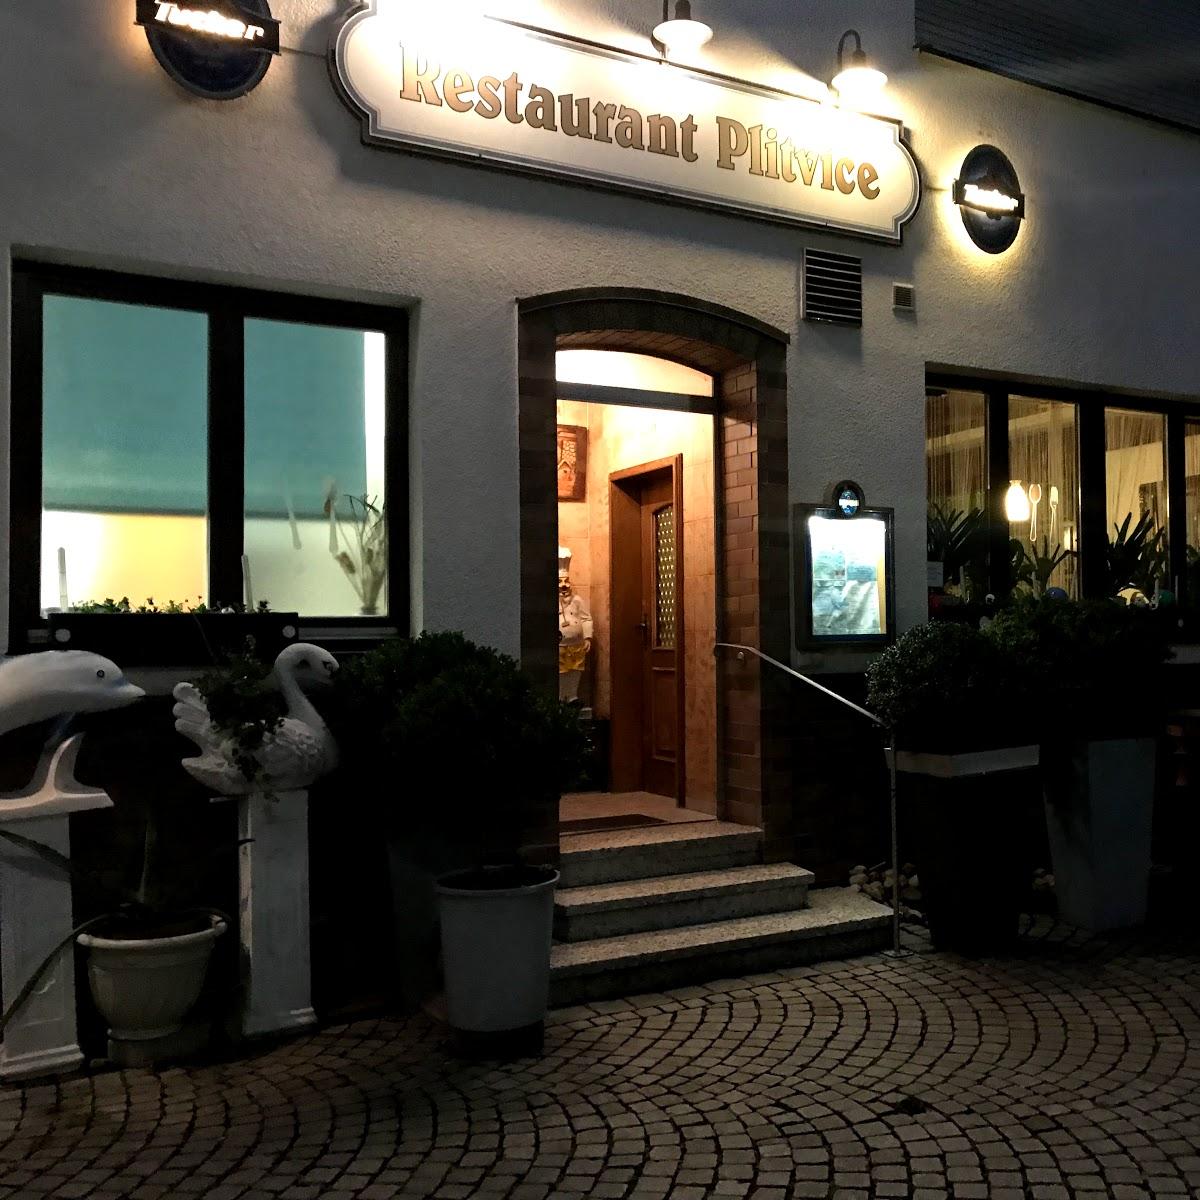 Restaurant "Restaurant Plitvice" in Neumarkt in der Oberpfalz